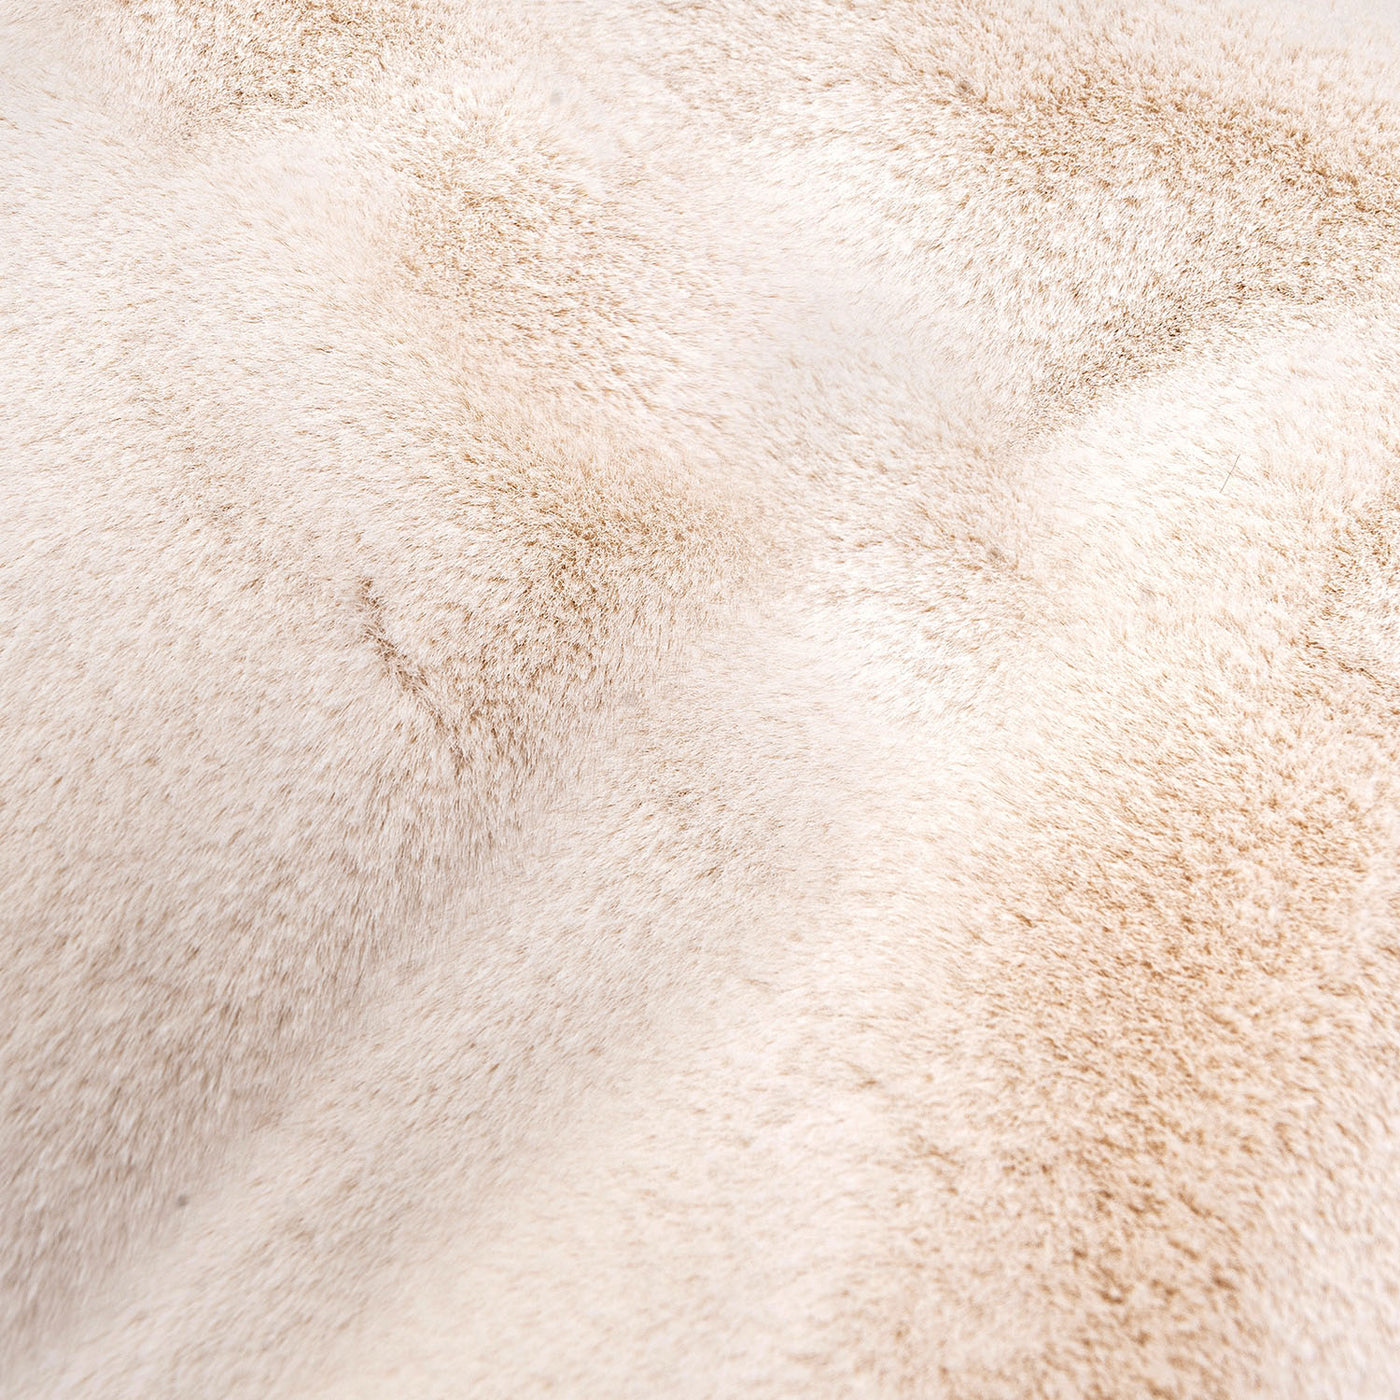 Produktbild creme Hundekissen aus Webpelz und italienischem Samt. Very Close-up view des Faux Furs.